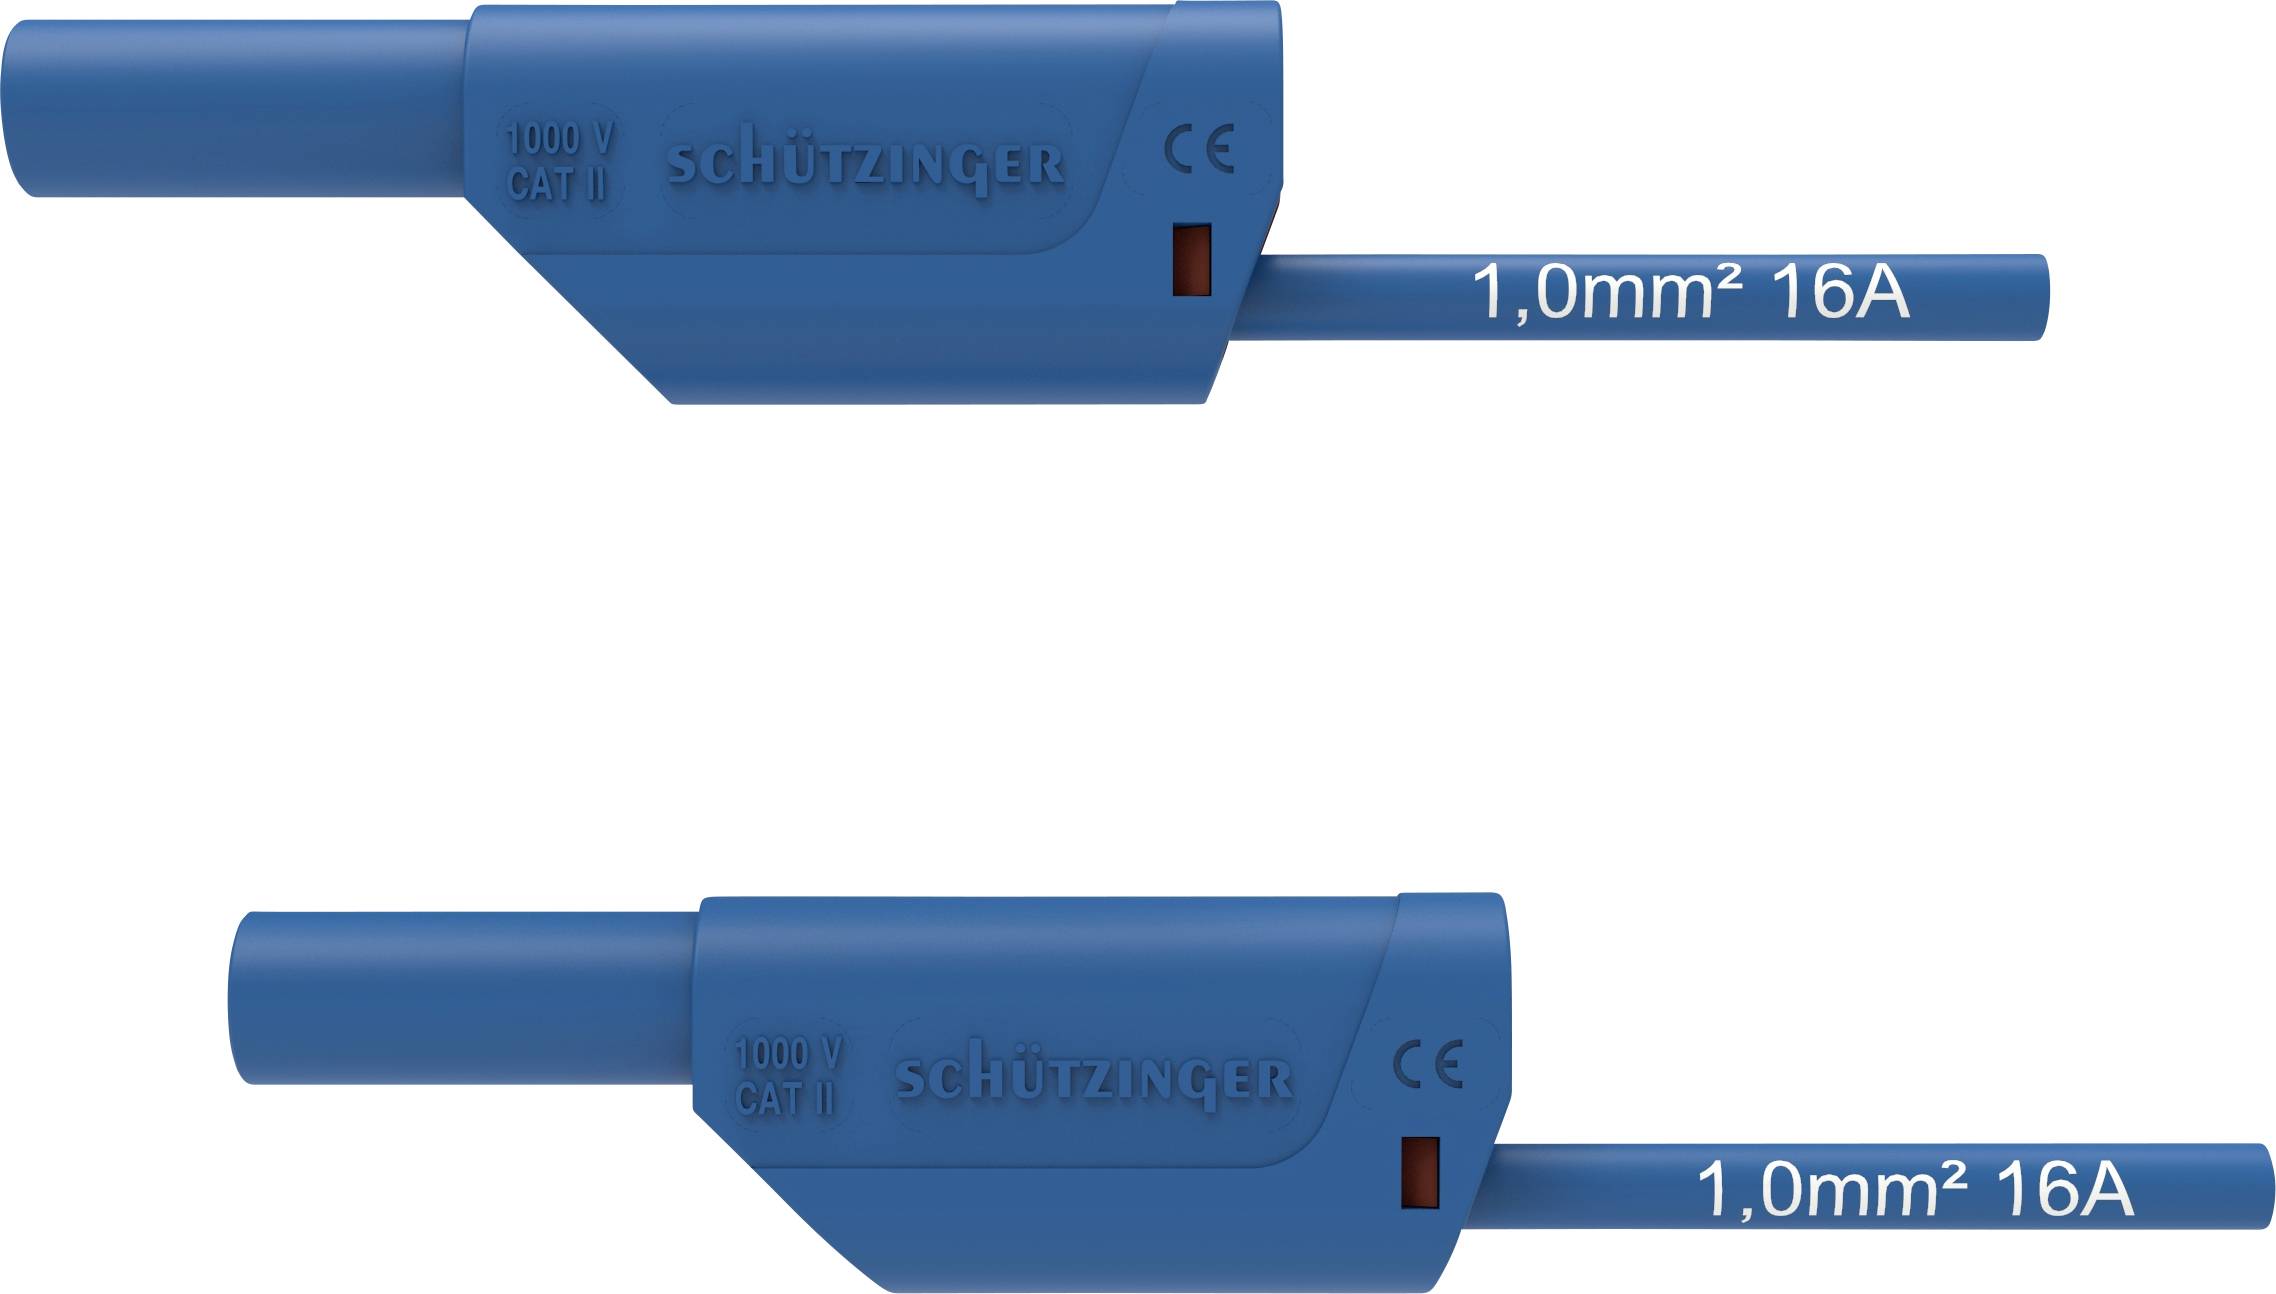 SCHÜTZINGER VSFK 8500 / 1 / 100 / BL Sicherheits-Messleitung [4 mm-Stecker - 4 mm-Stecker] 100.